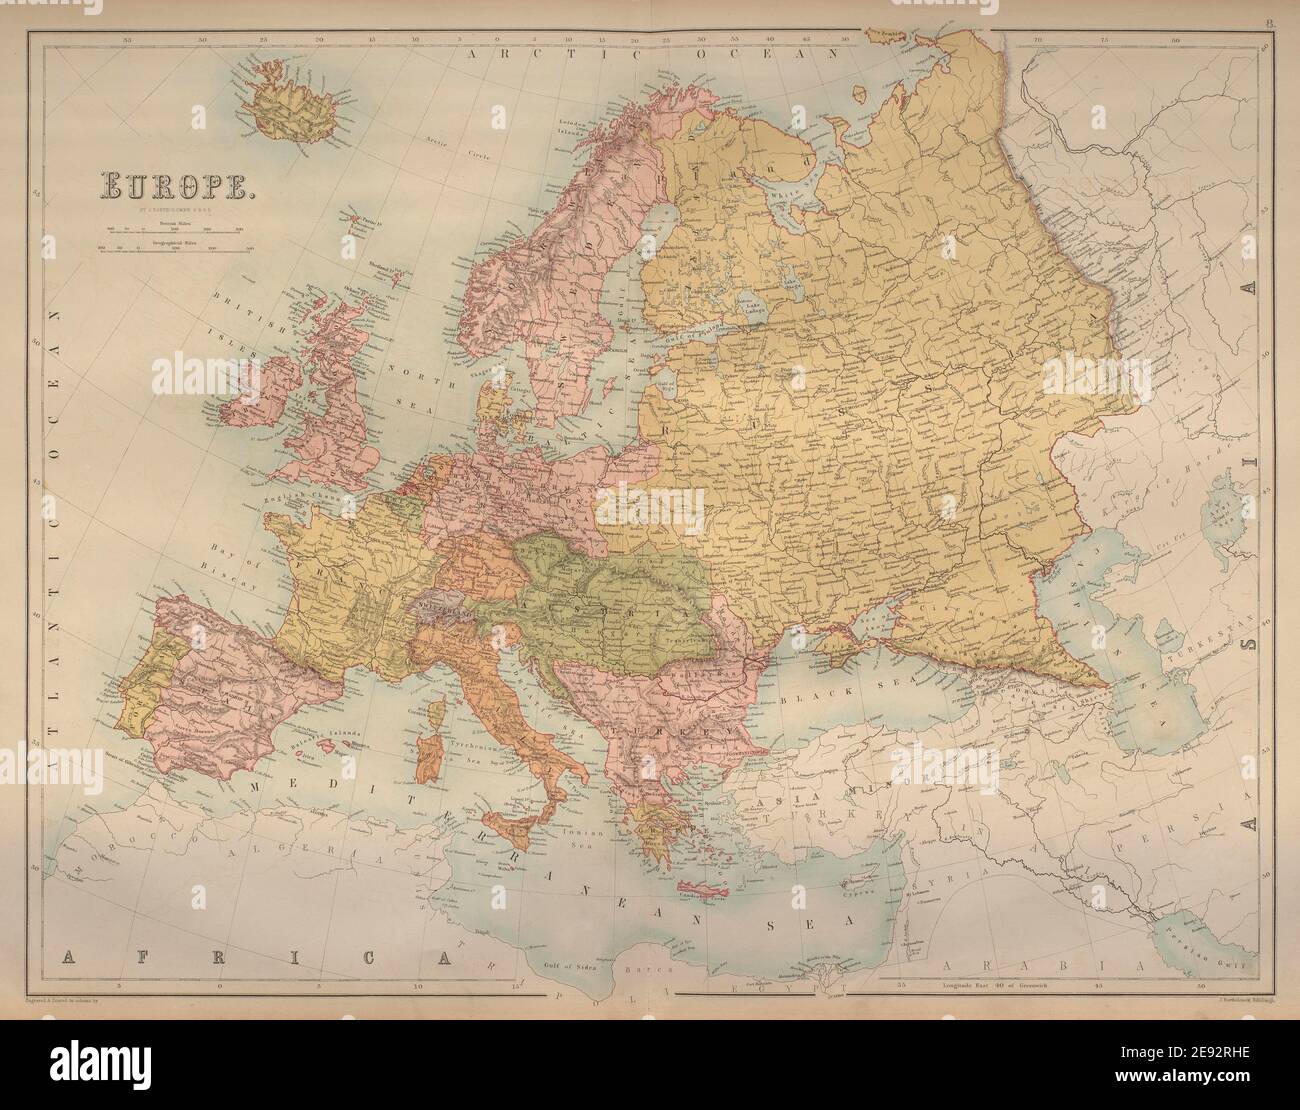 Europa. Austria Prussia Ottomano imperi russi BARTOLOMEO 1870 vecchia mappa Foto Stock